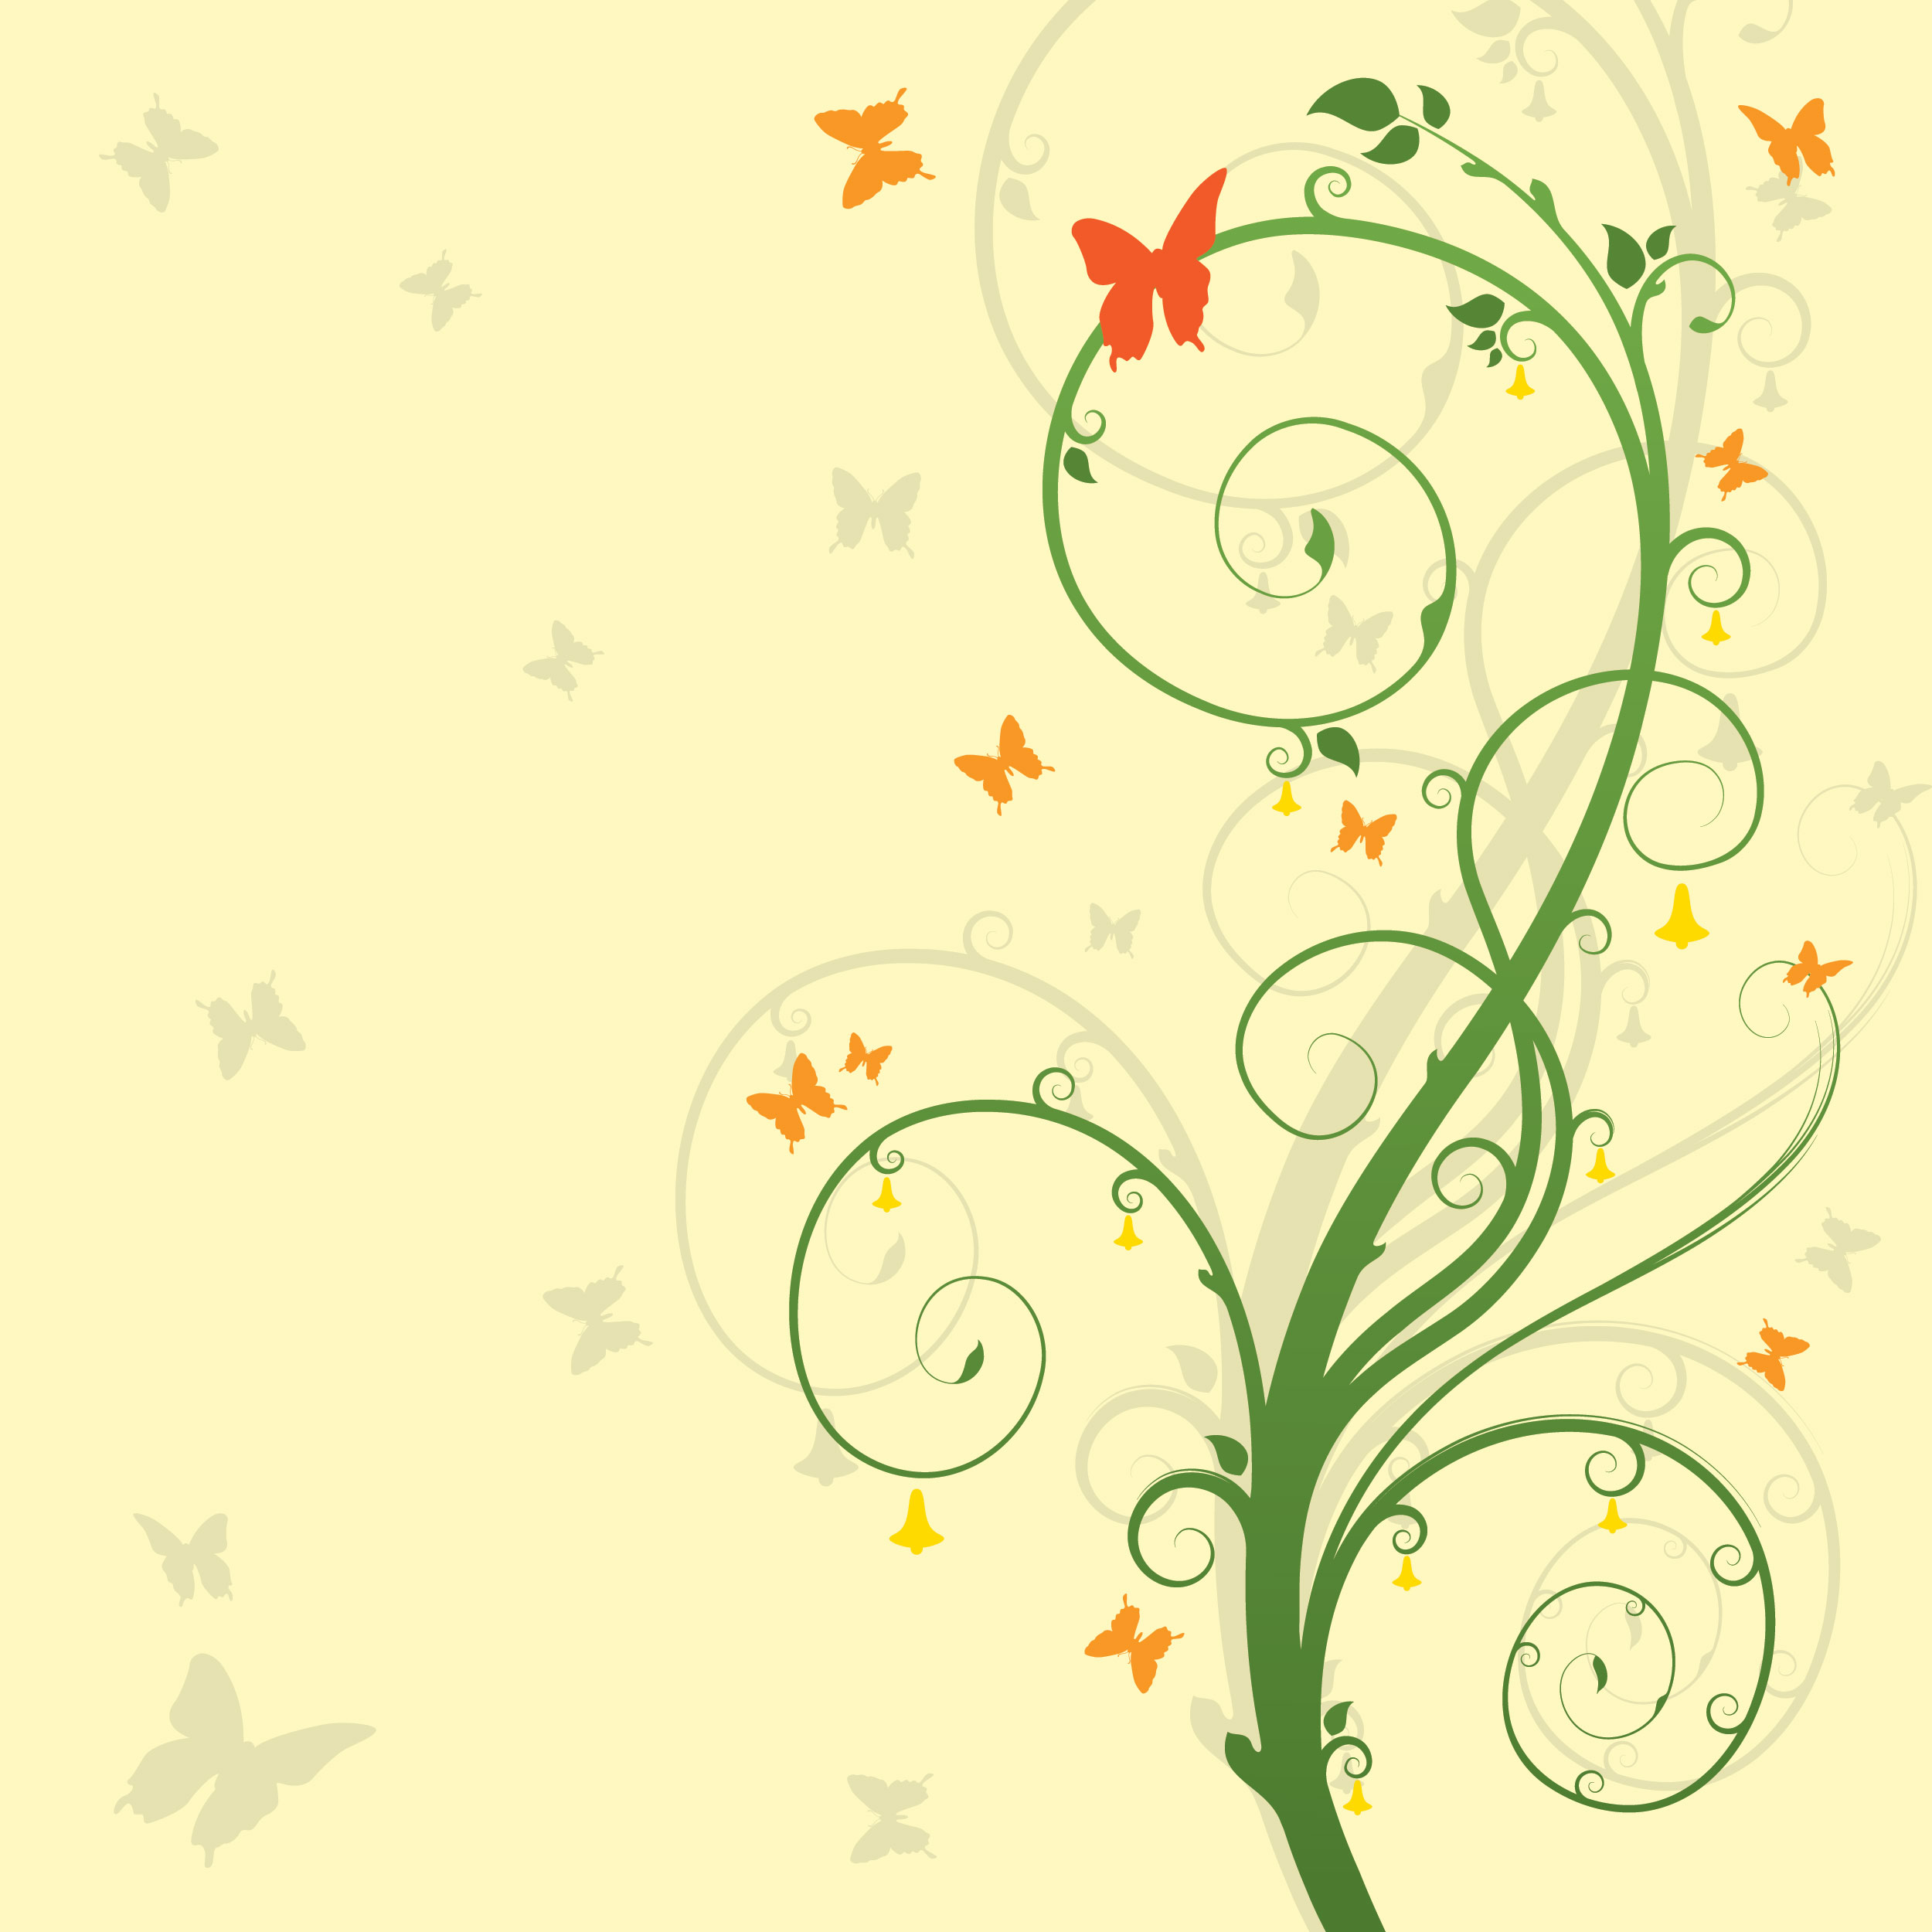 葉っぱや草木のイラスト 壁紙 背景no 109 茎つる 蝶 影